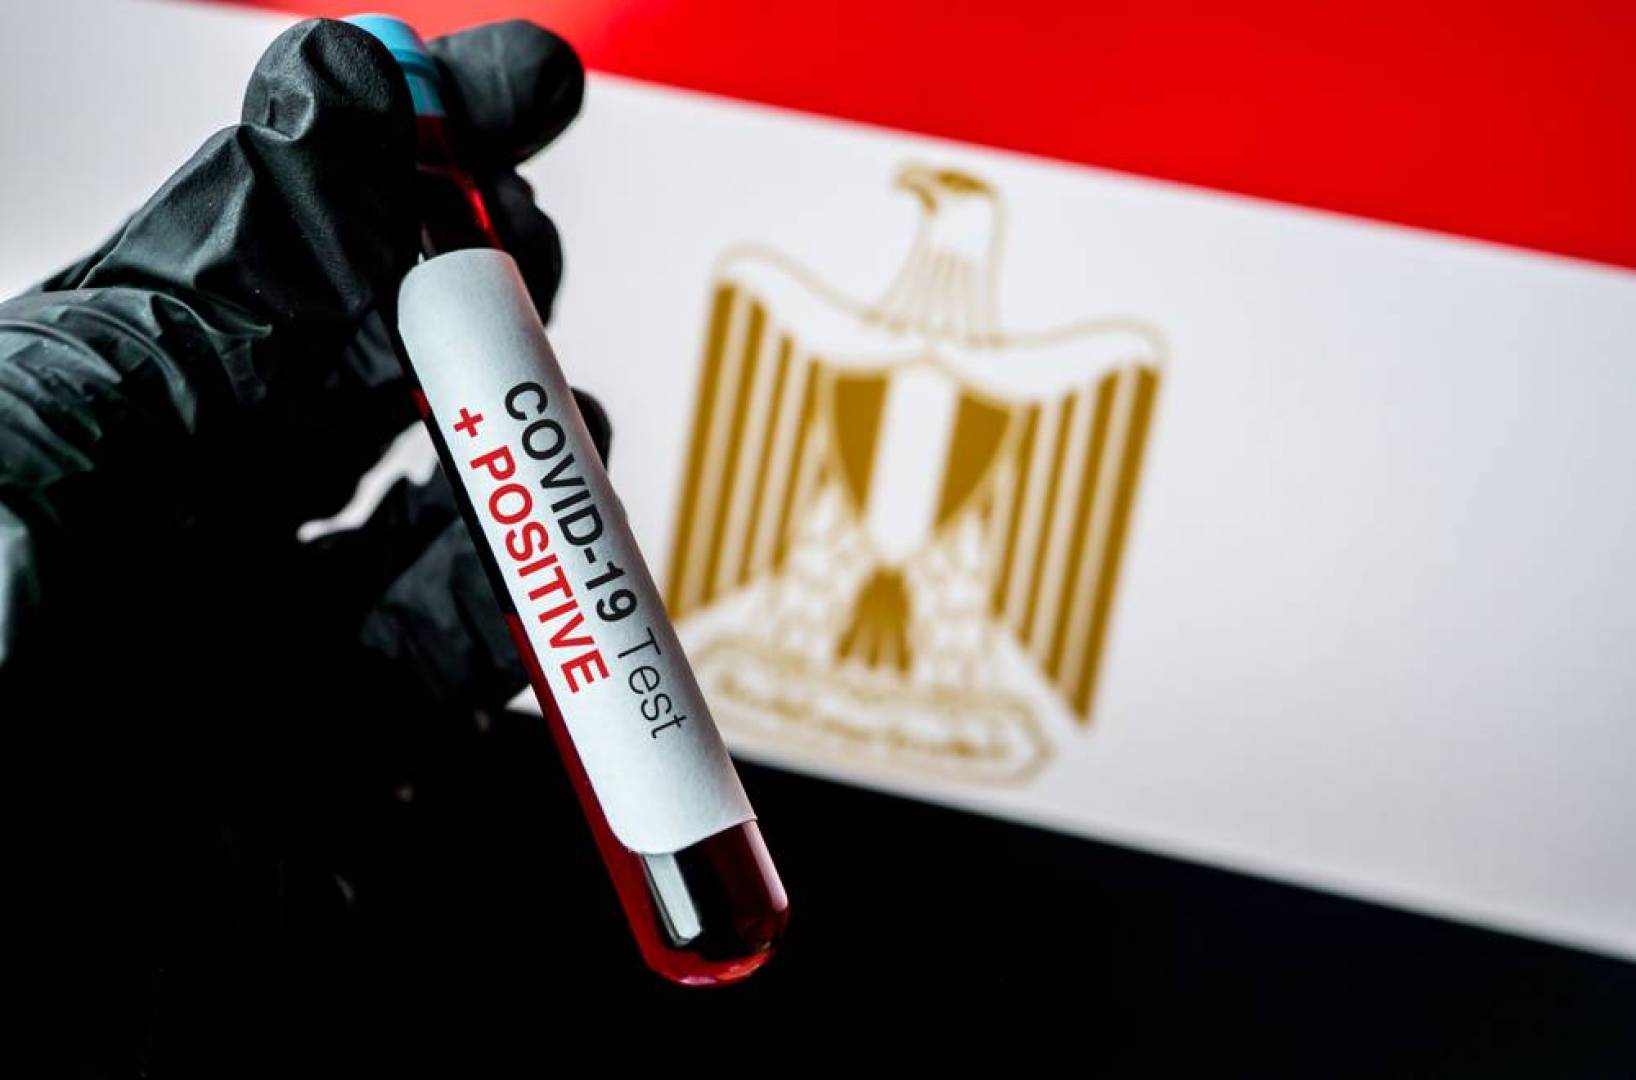 إصابات كورونا اليومية في مصر تتجاوز الـ 1000 حالة